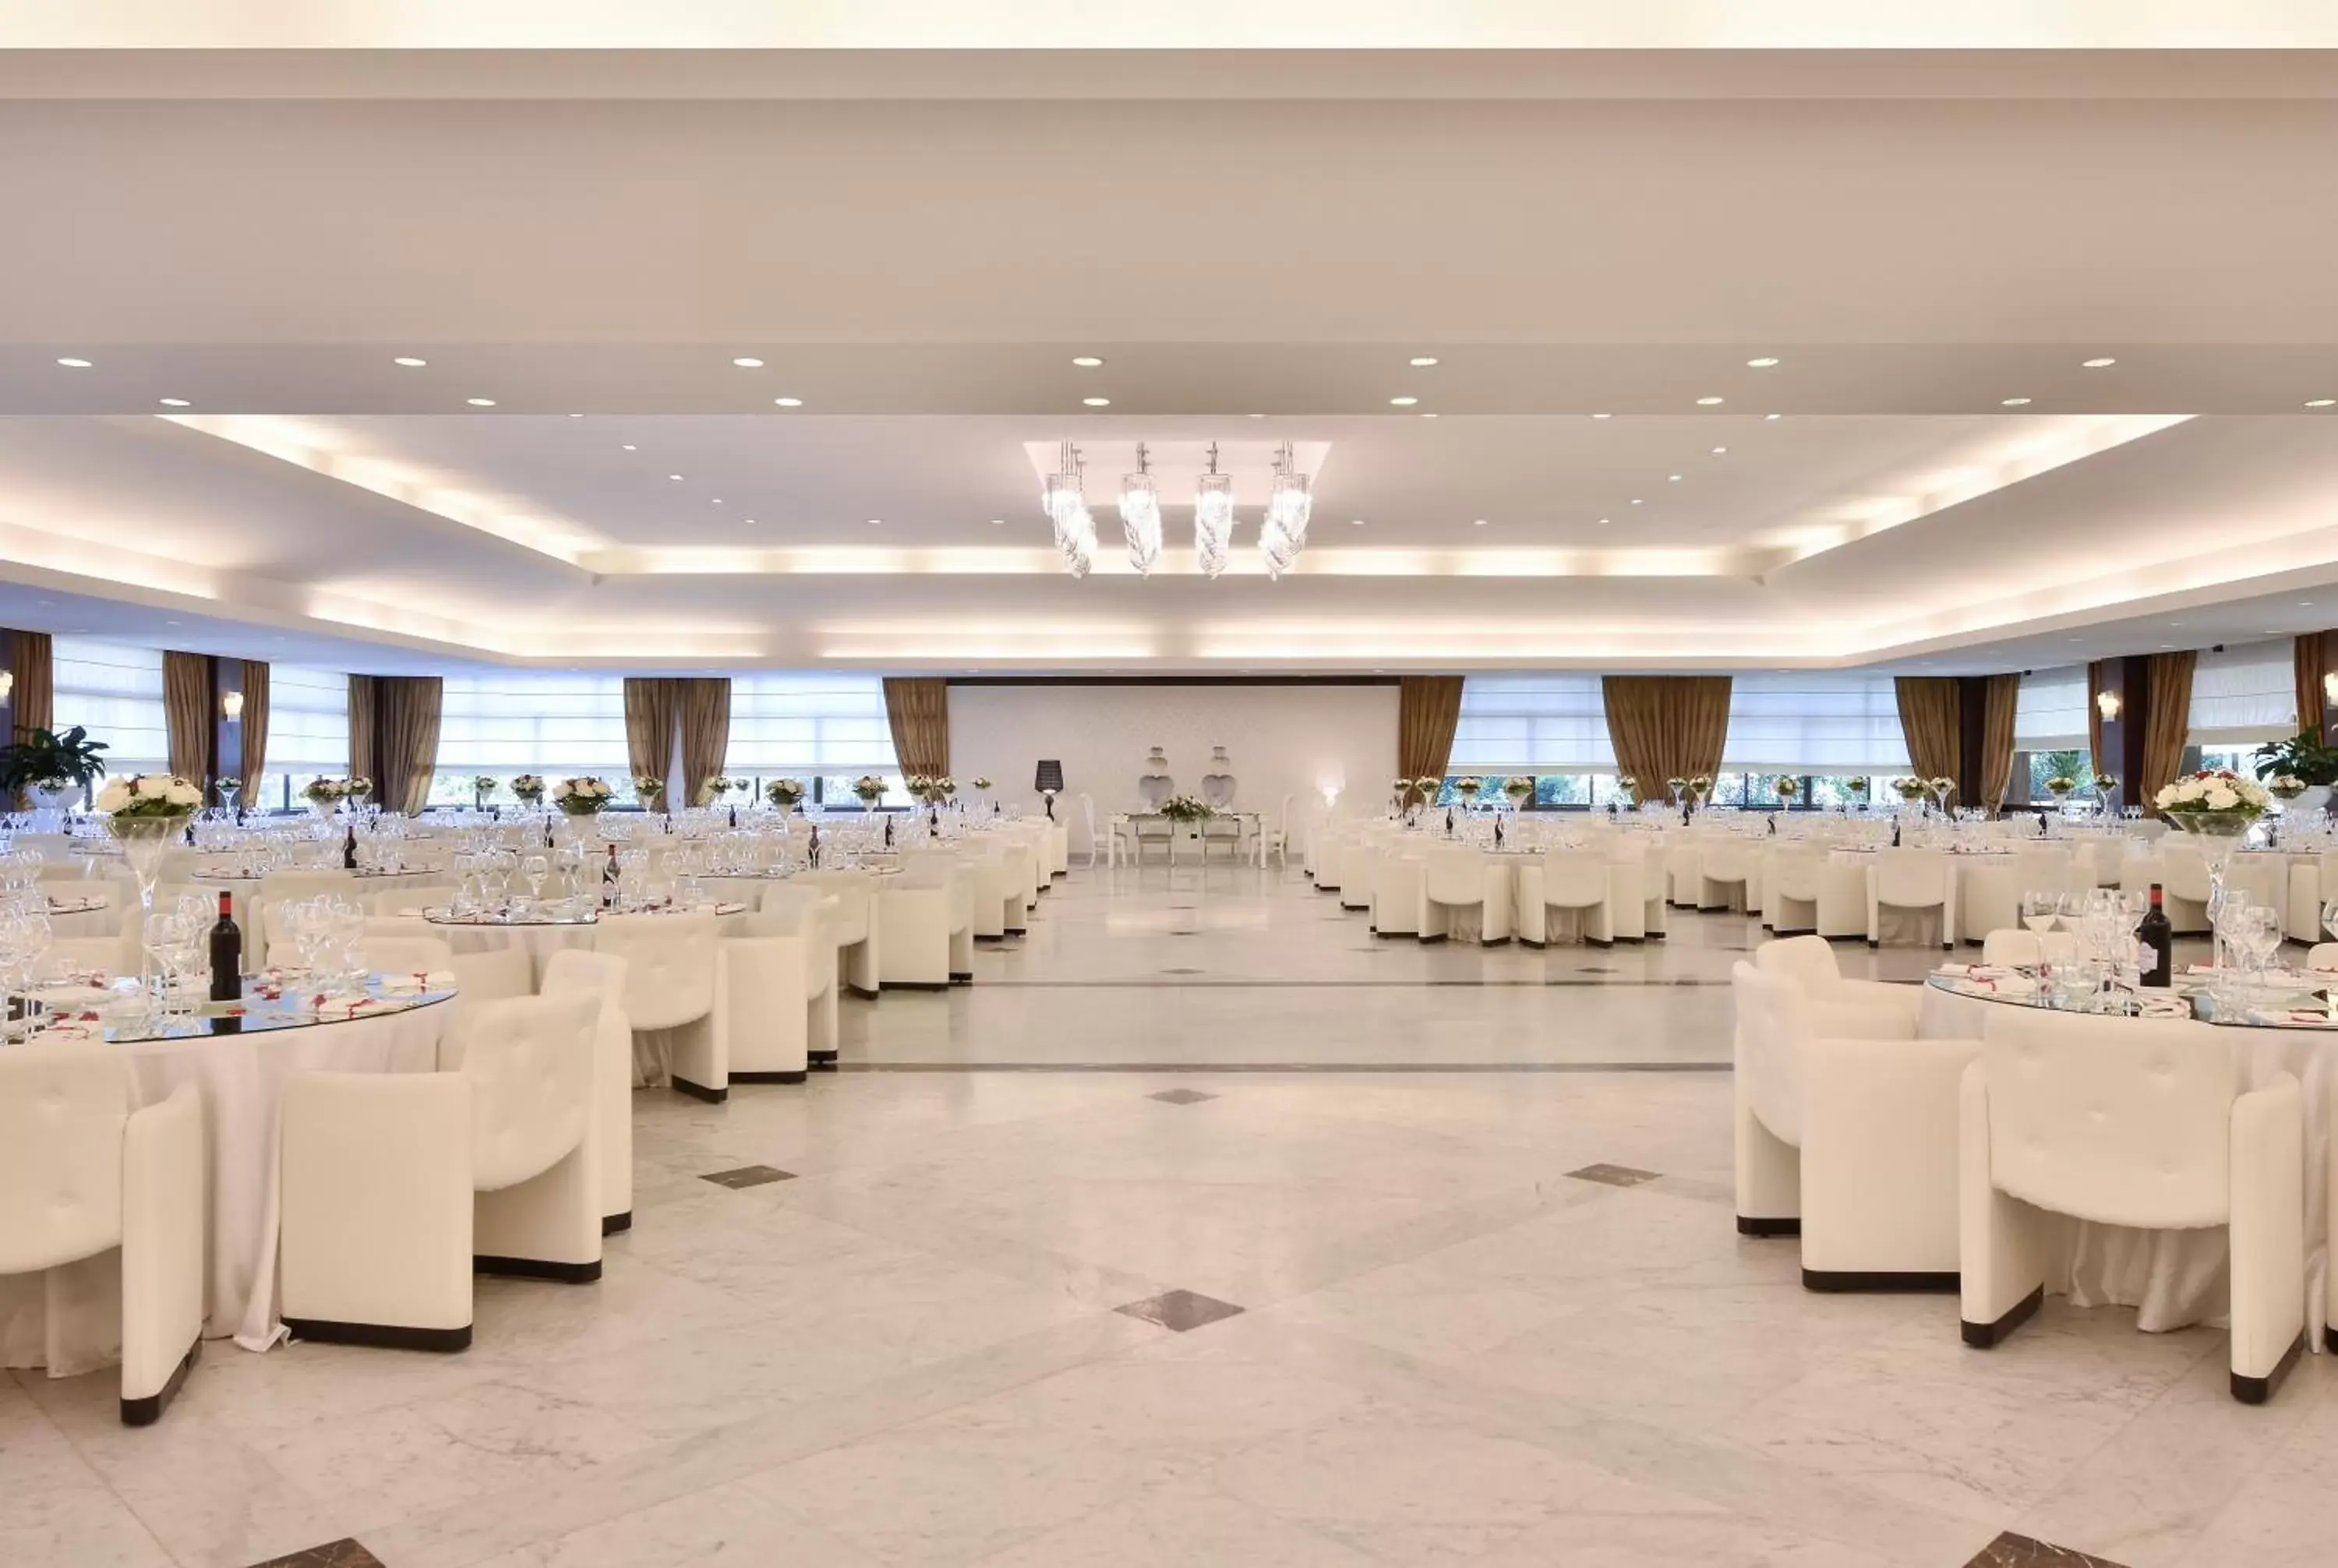 Banquet/Function facilities, Banquet Facilities in Hotel Ariston